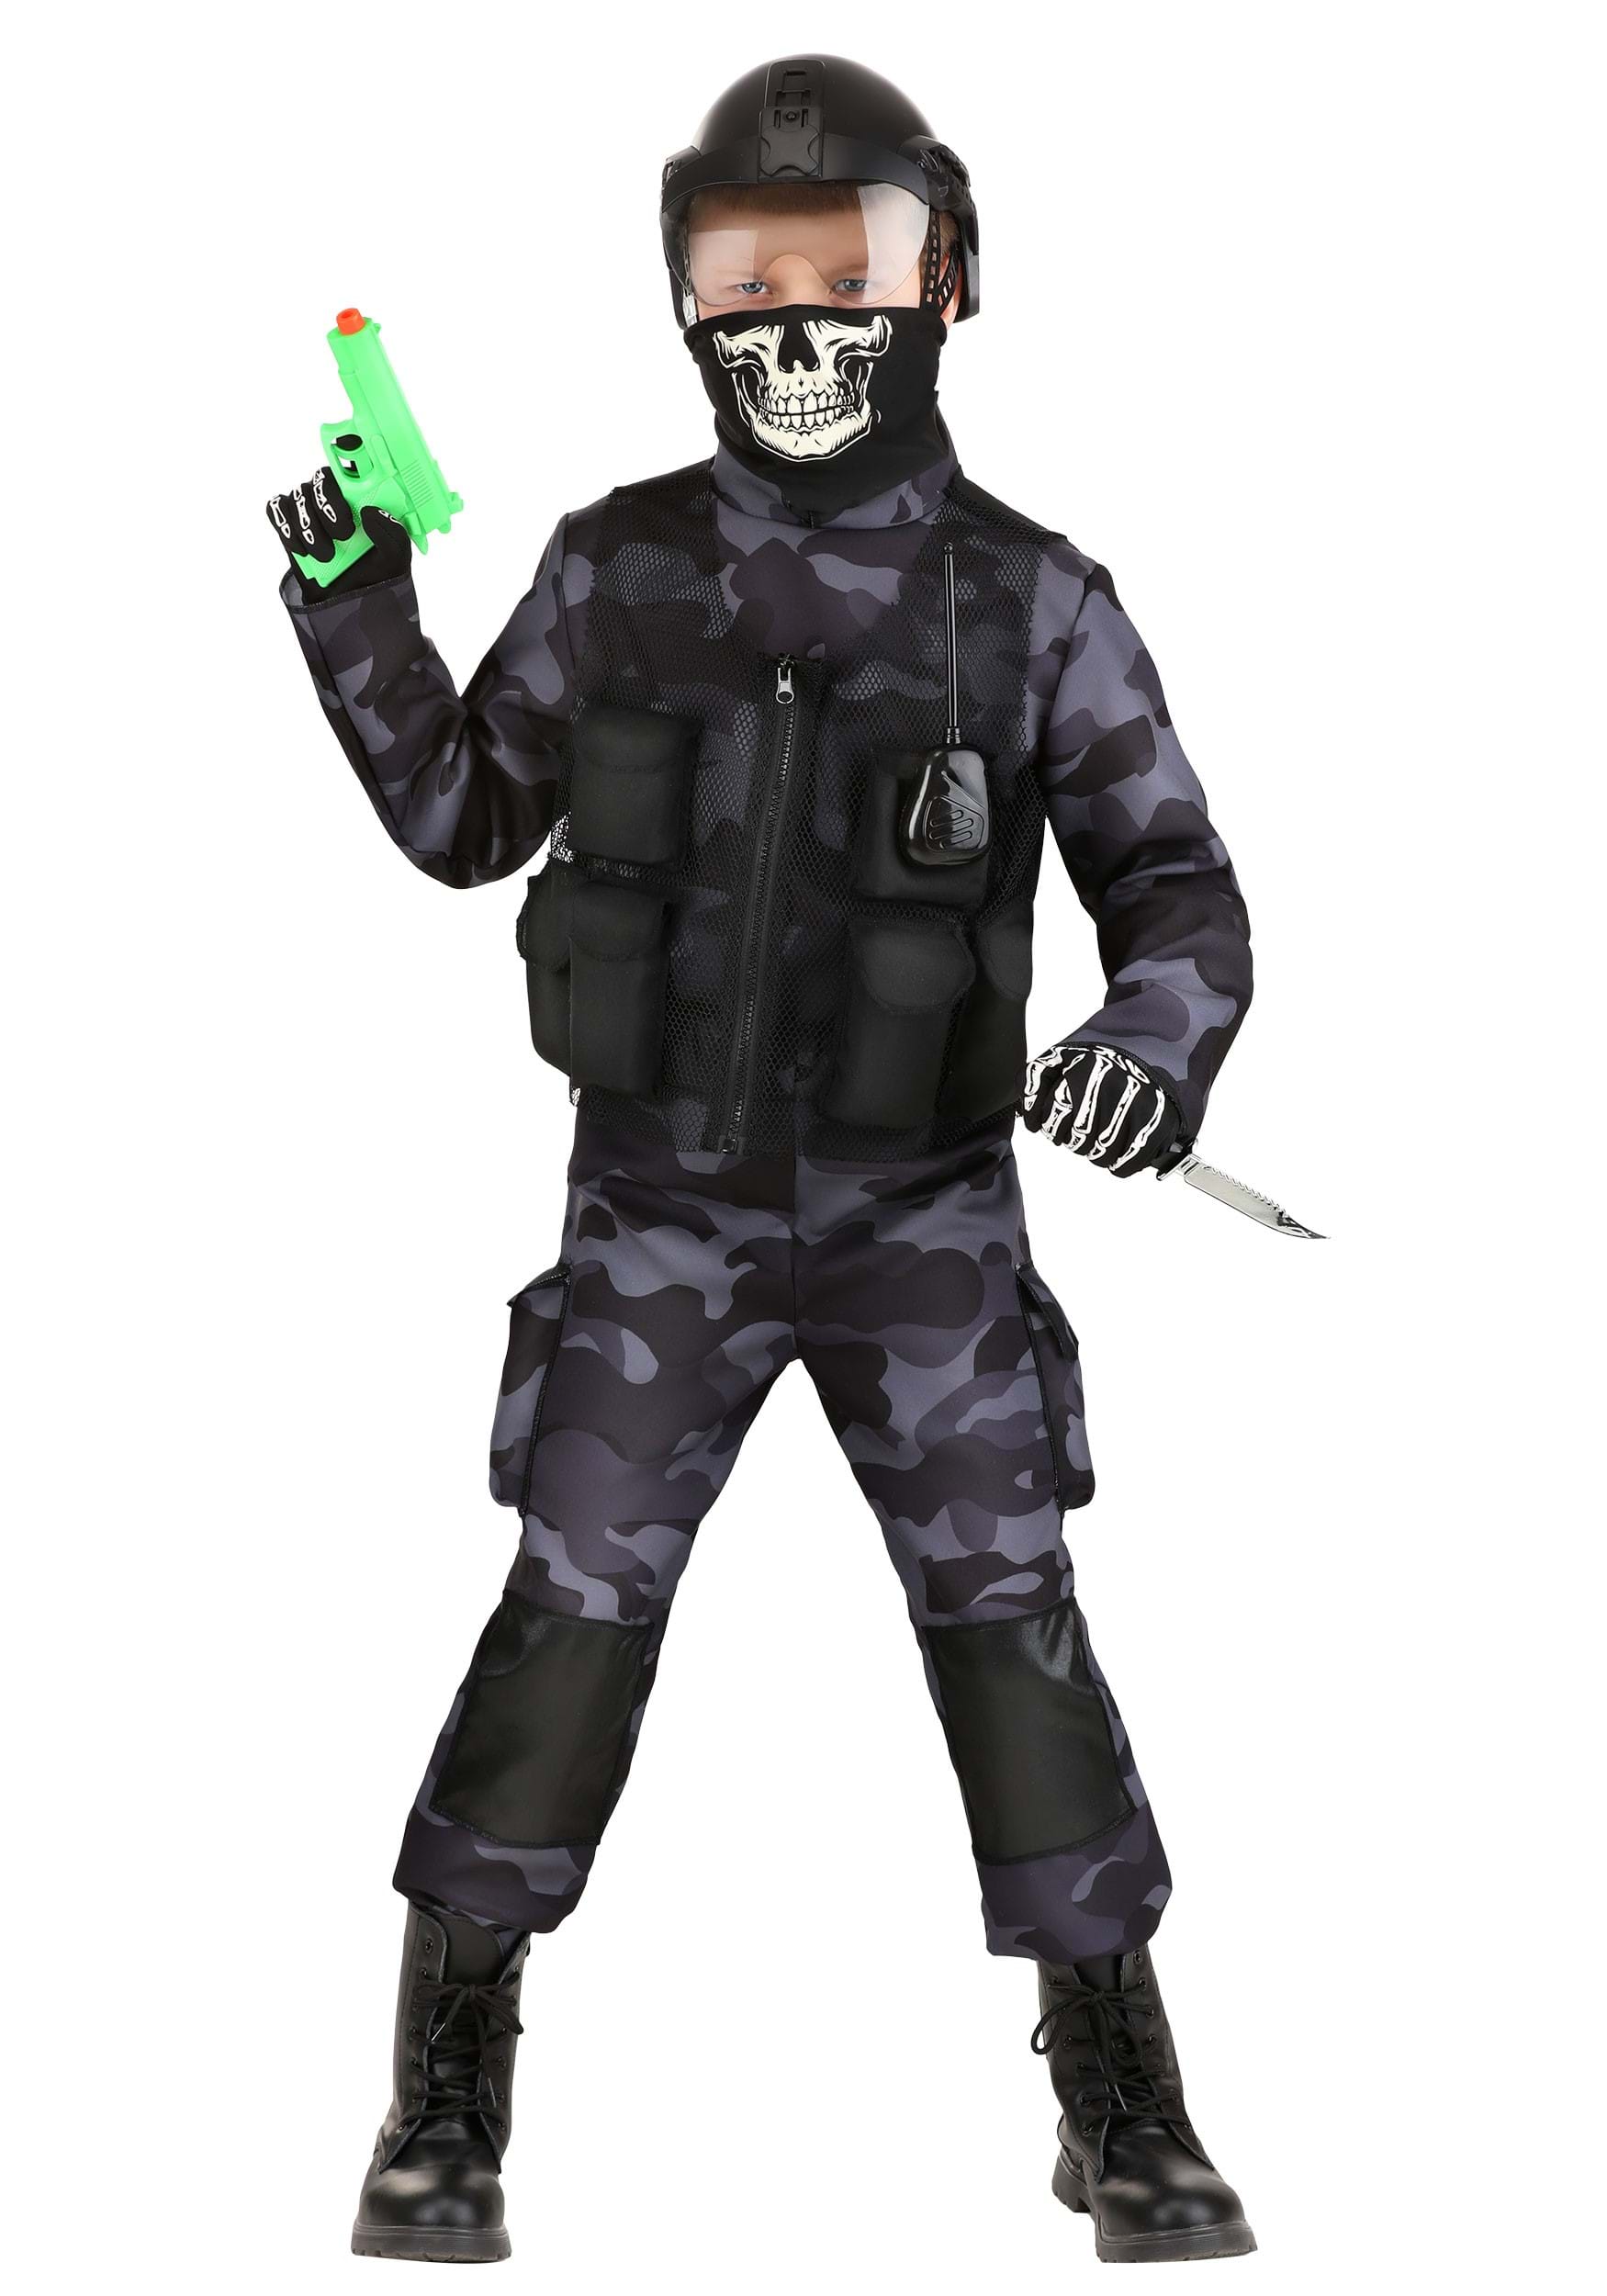 Seal Team 10 Skull Mask